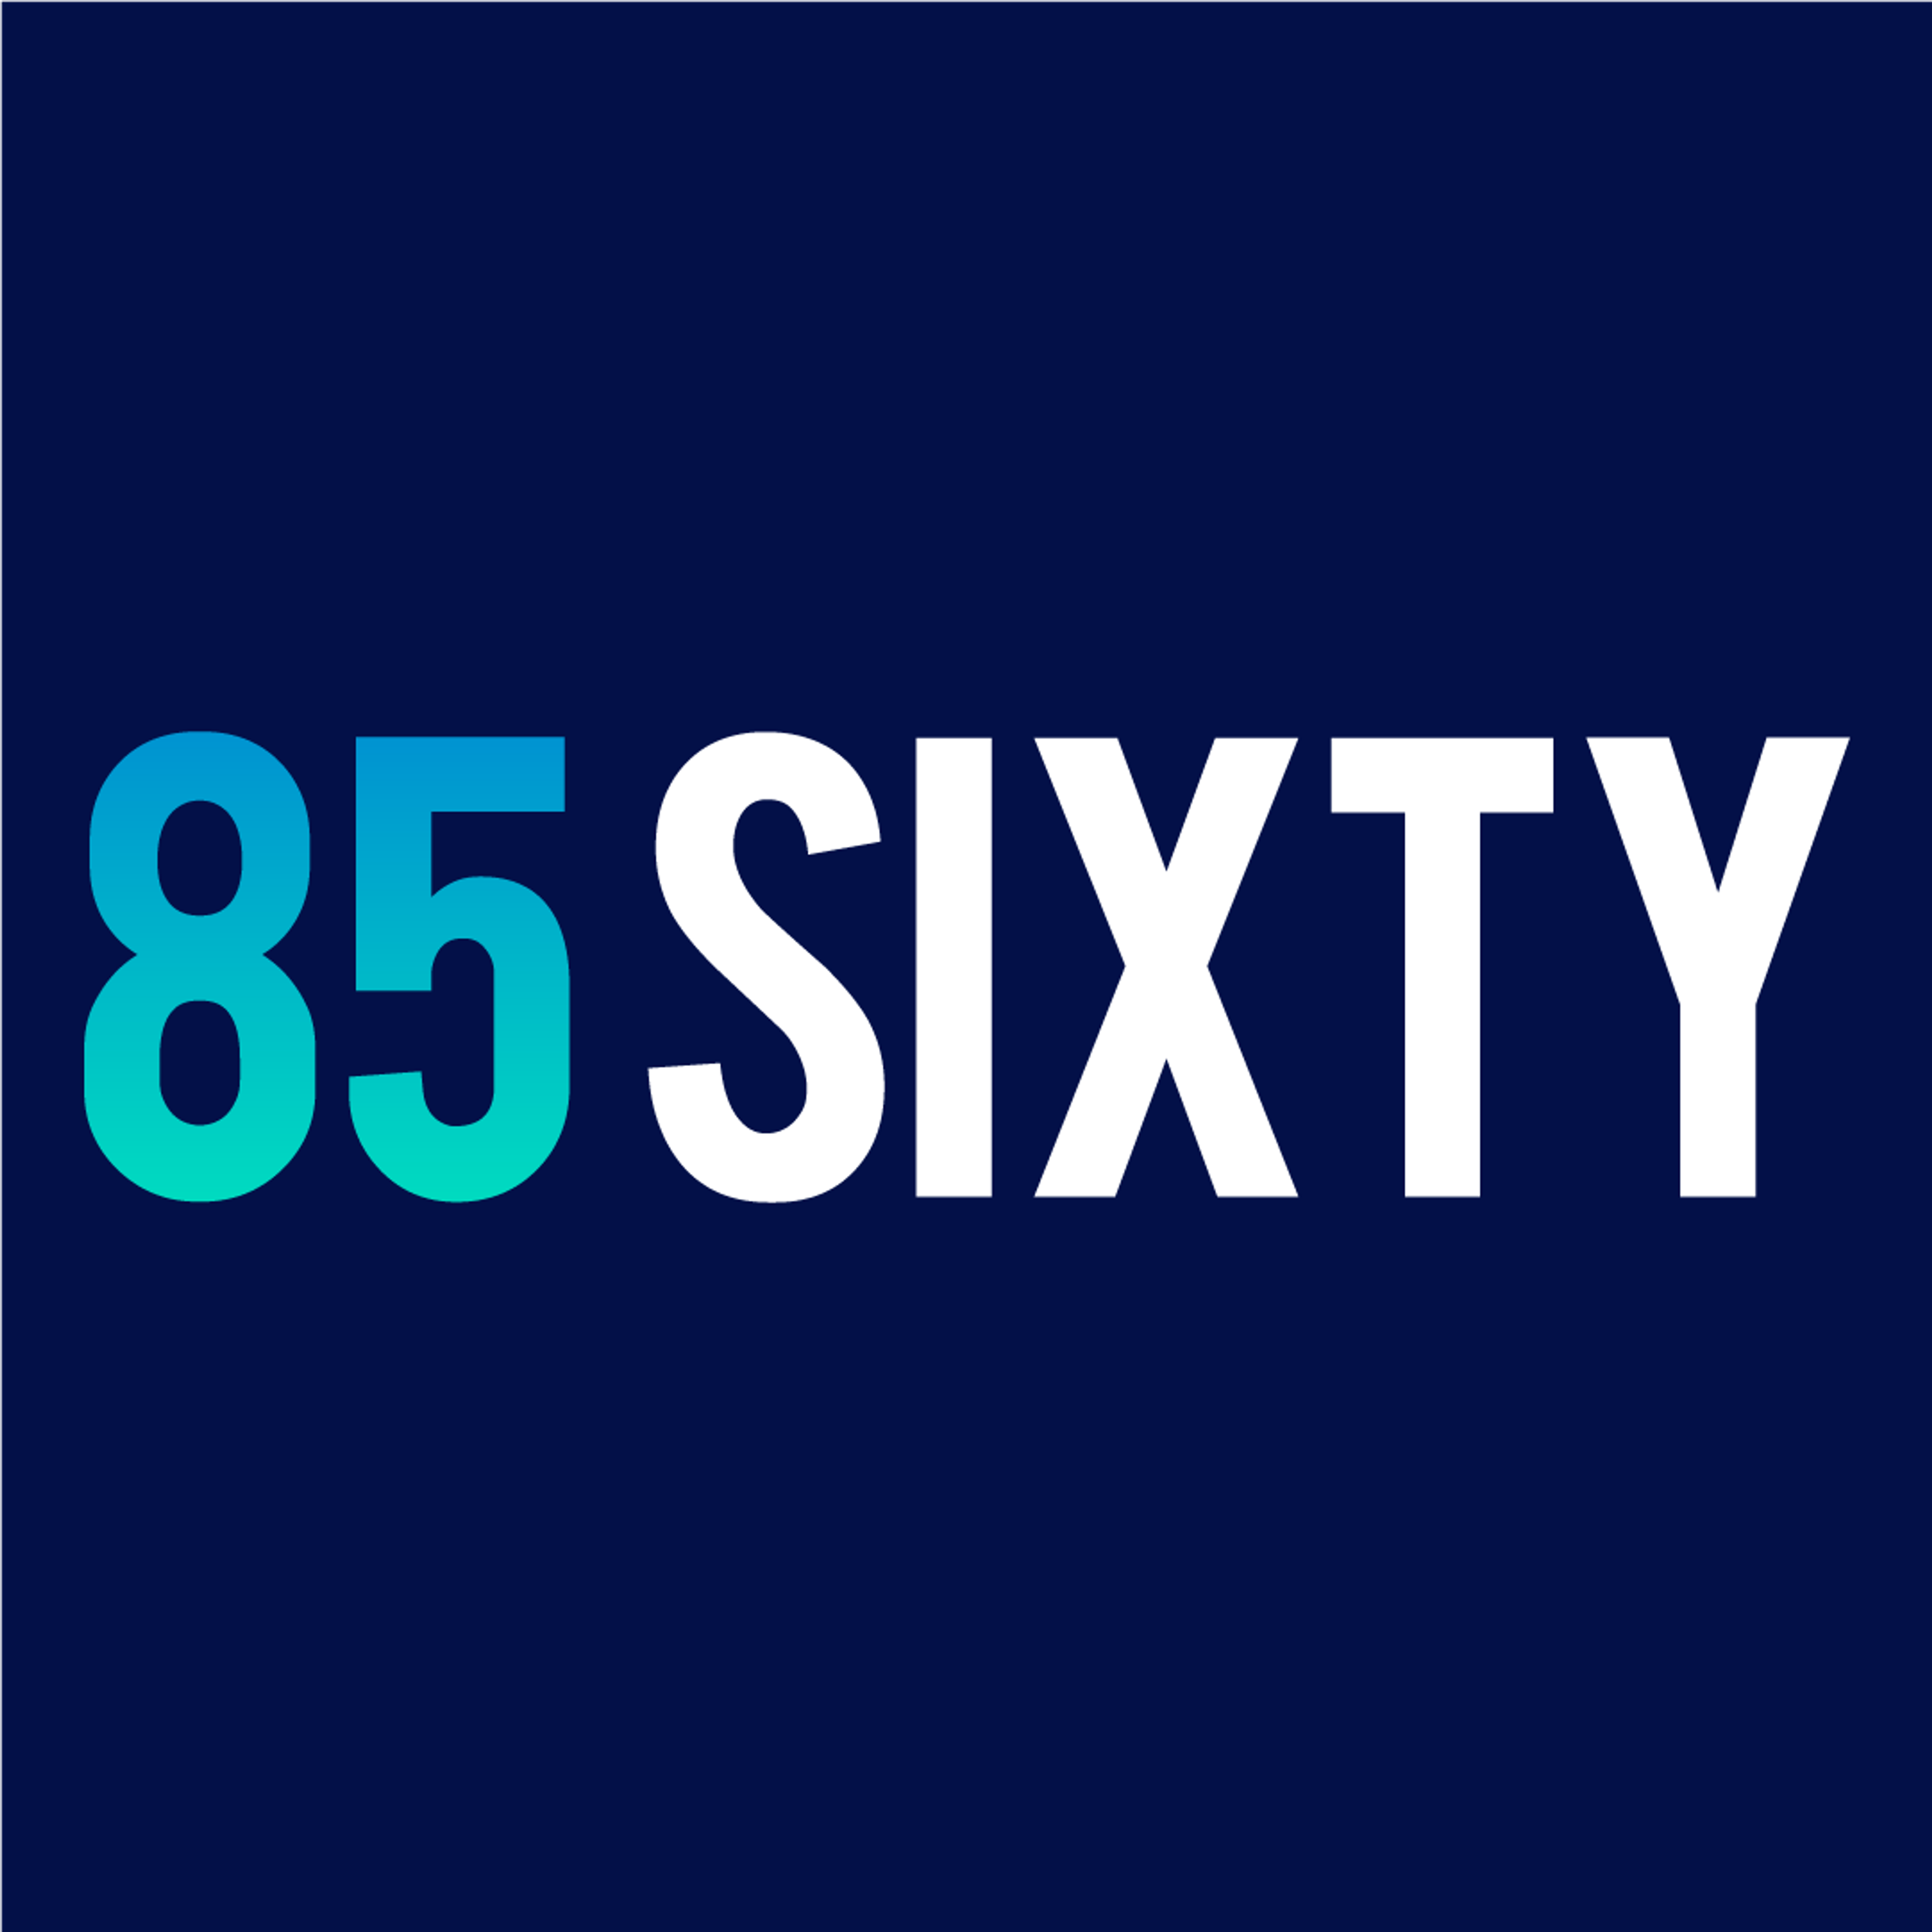 85Sixty